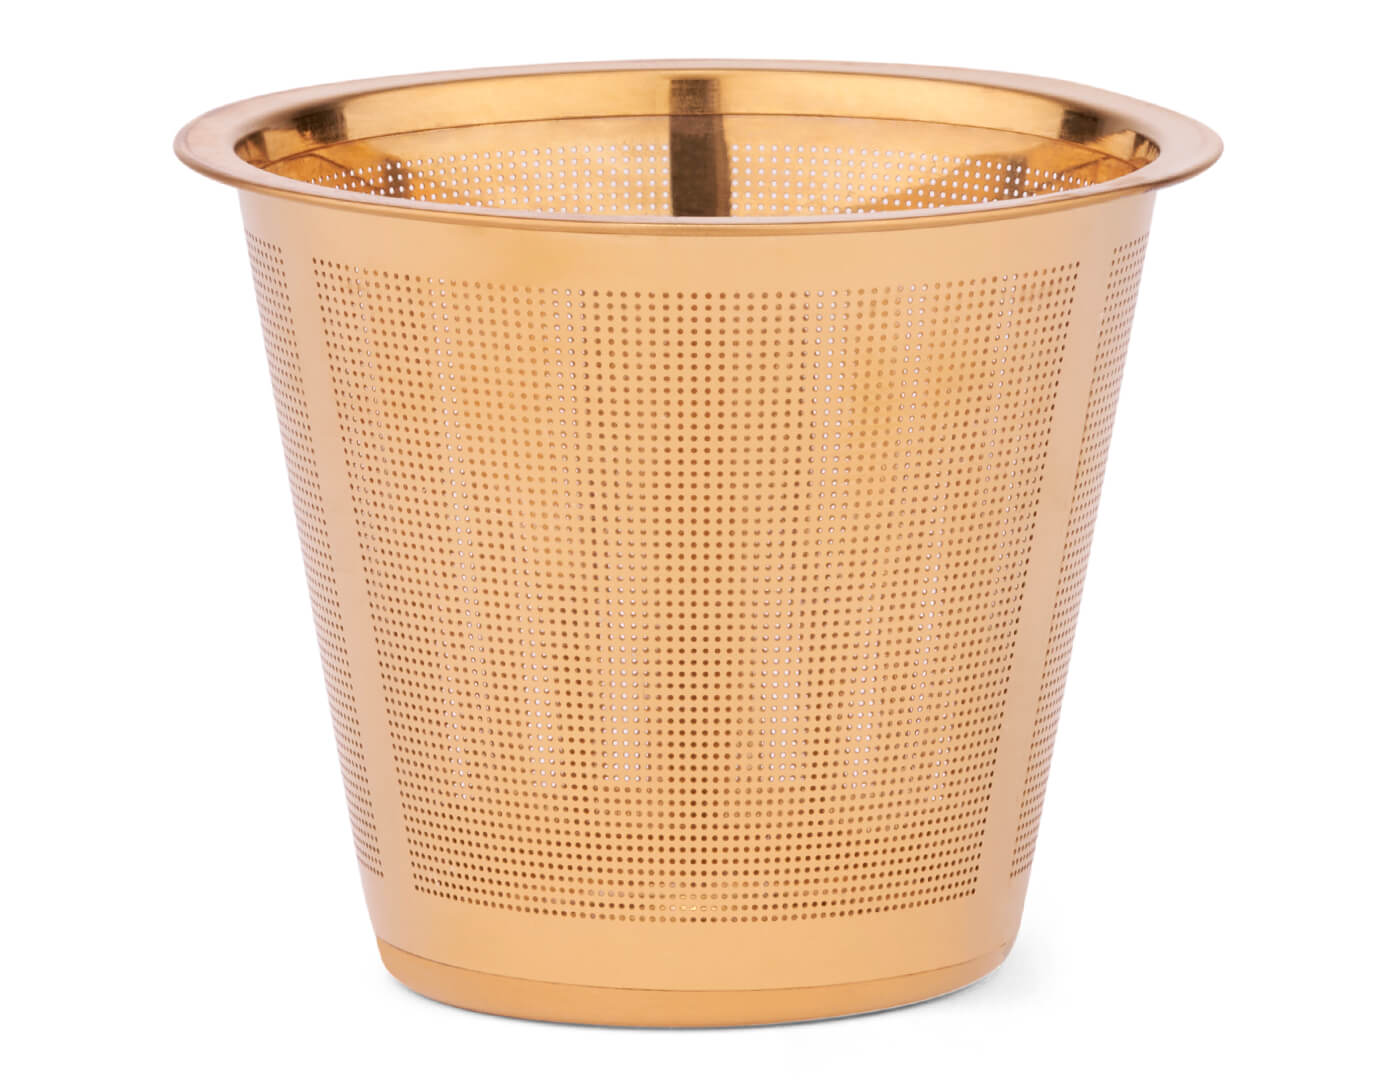 Gold loose tea infuser basket